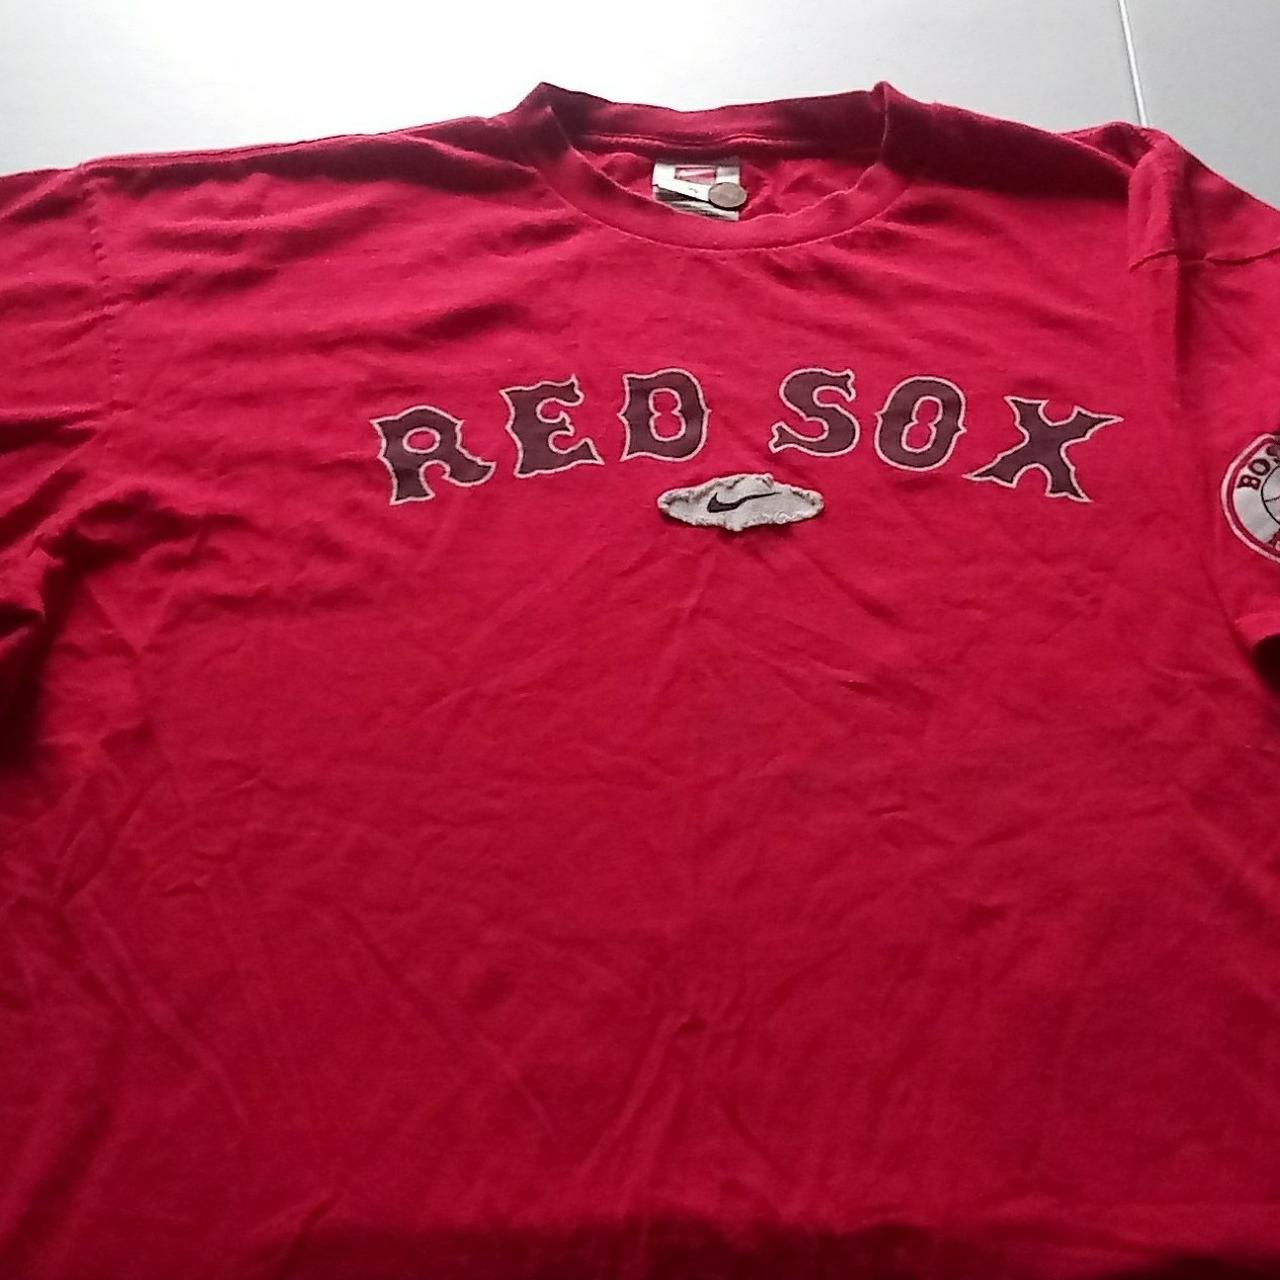 retro red sox shirt